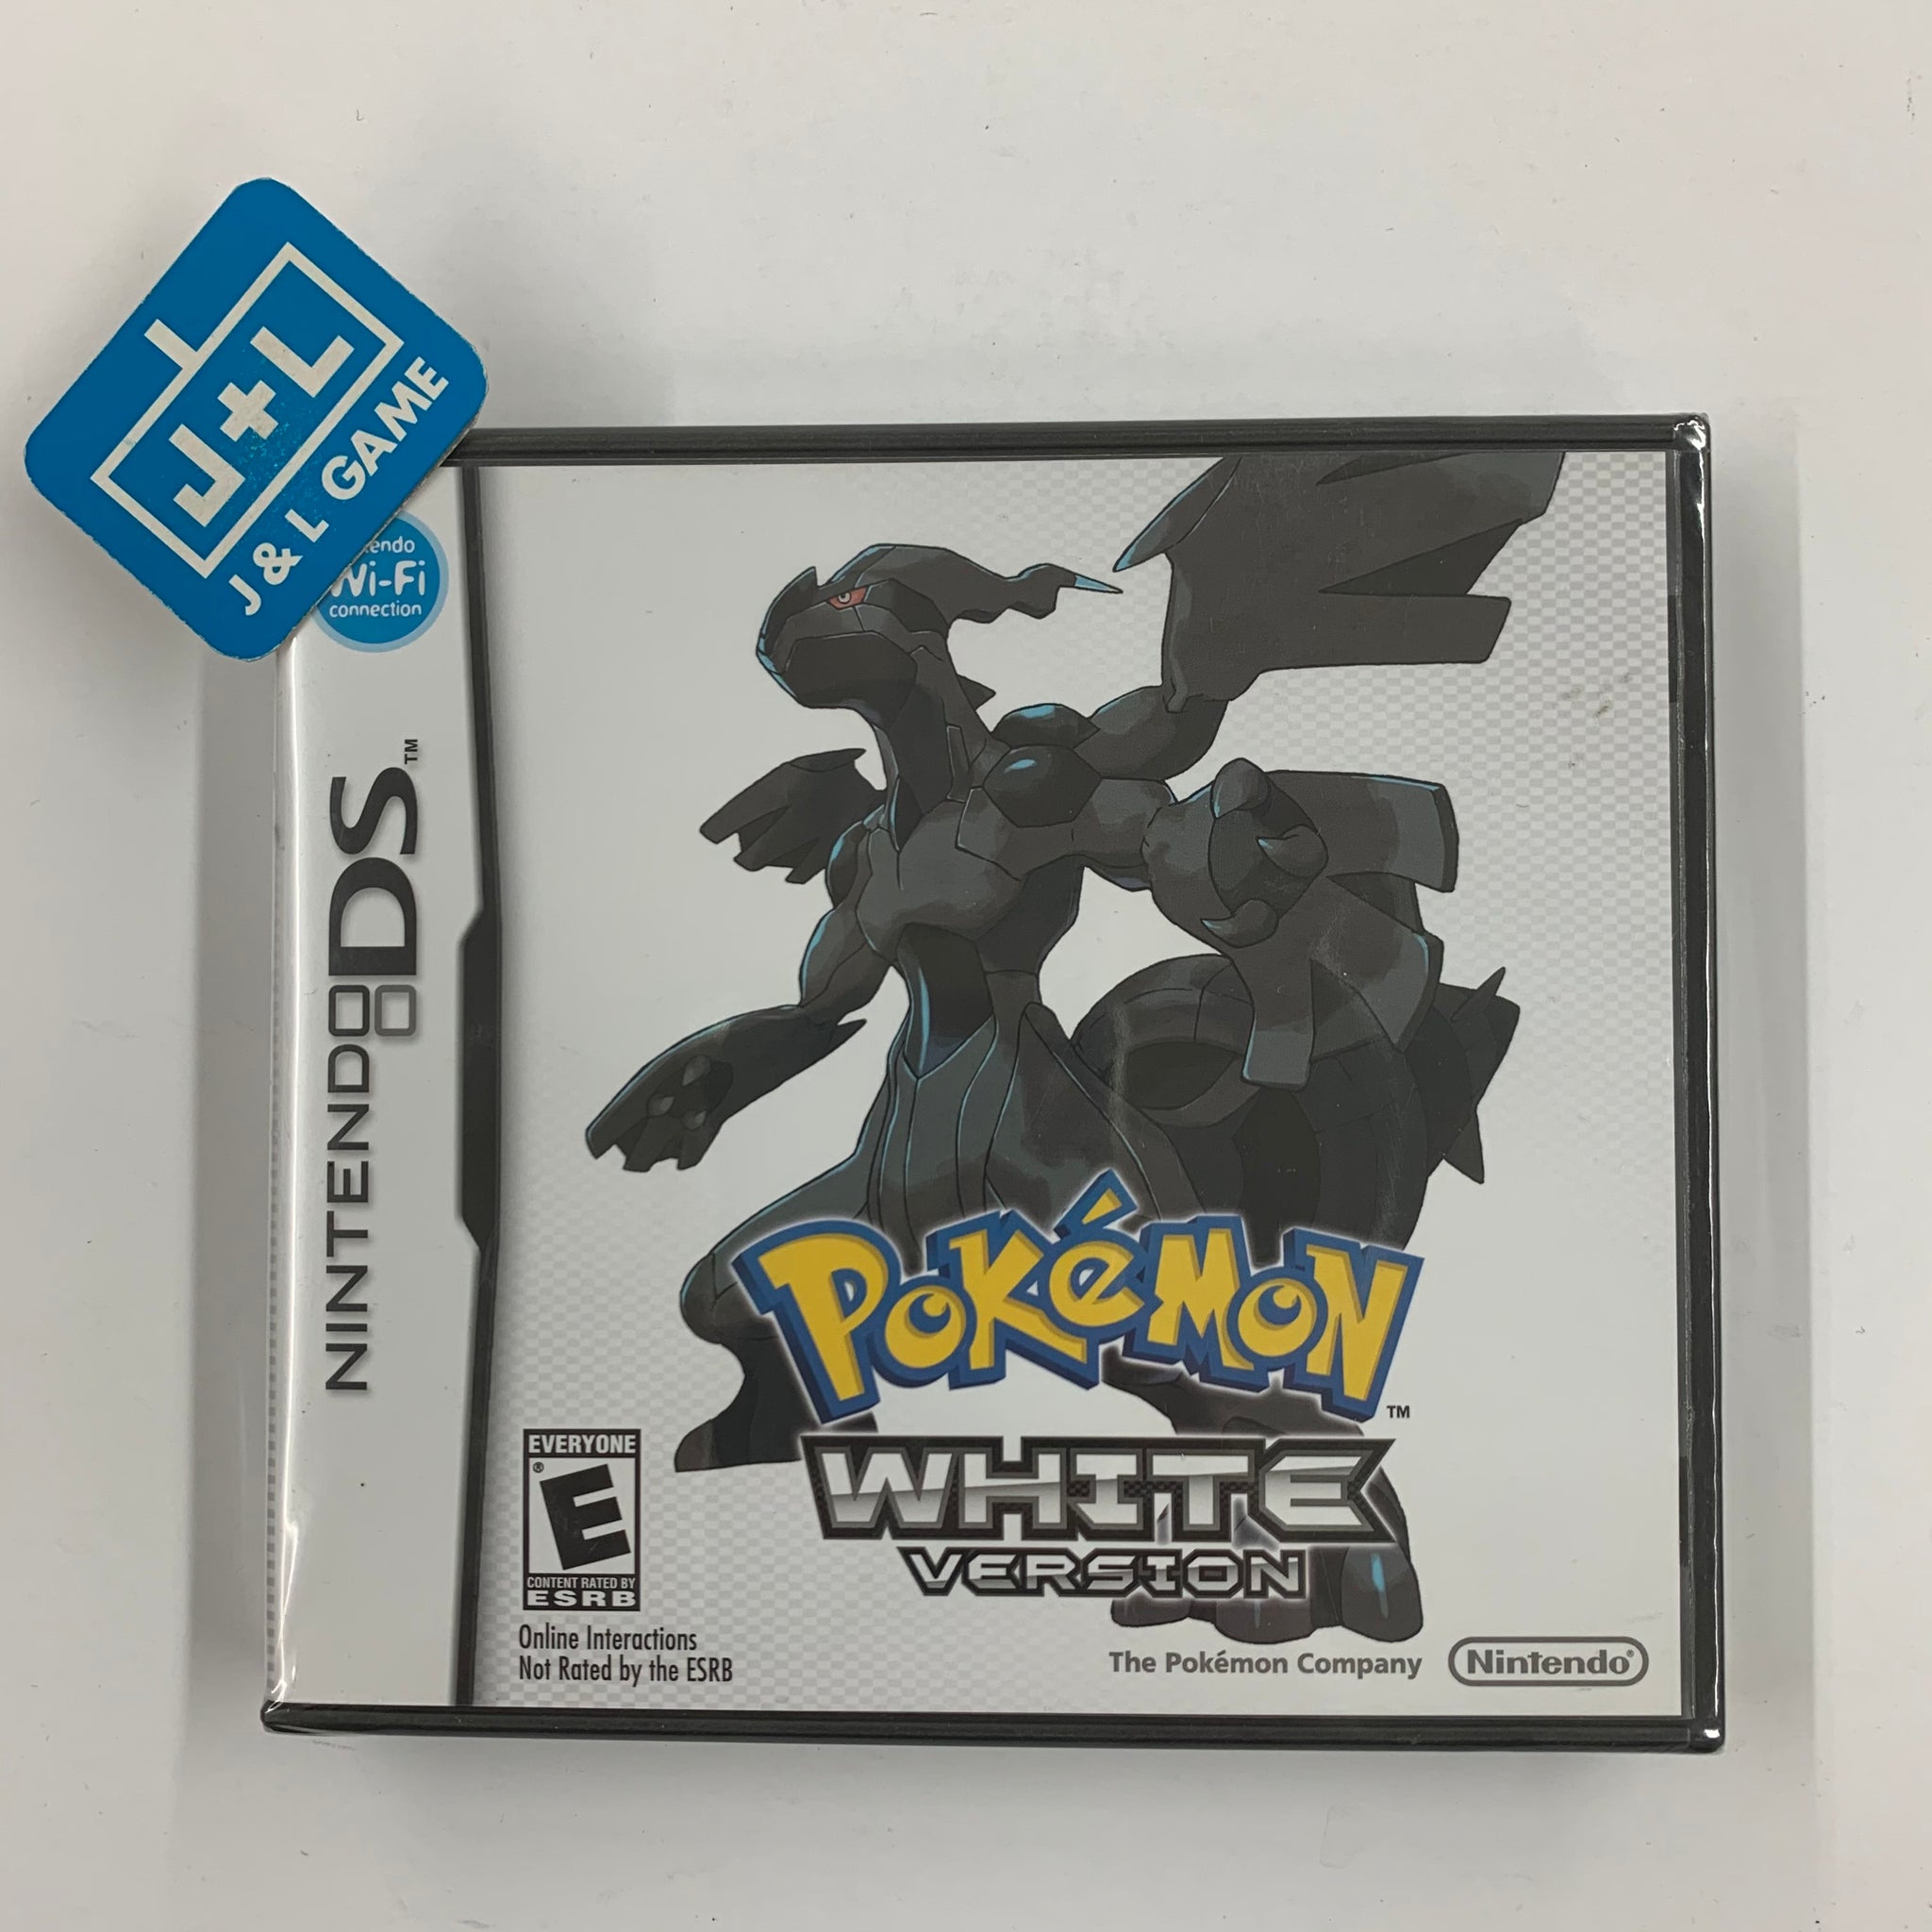 Pokémon Black and White, Nintendo